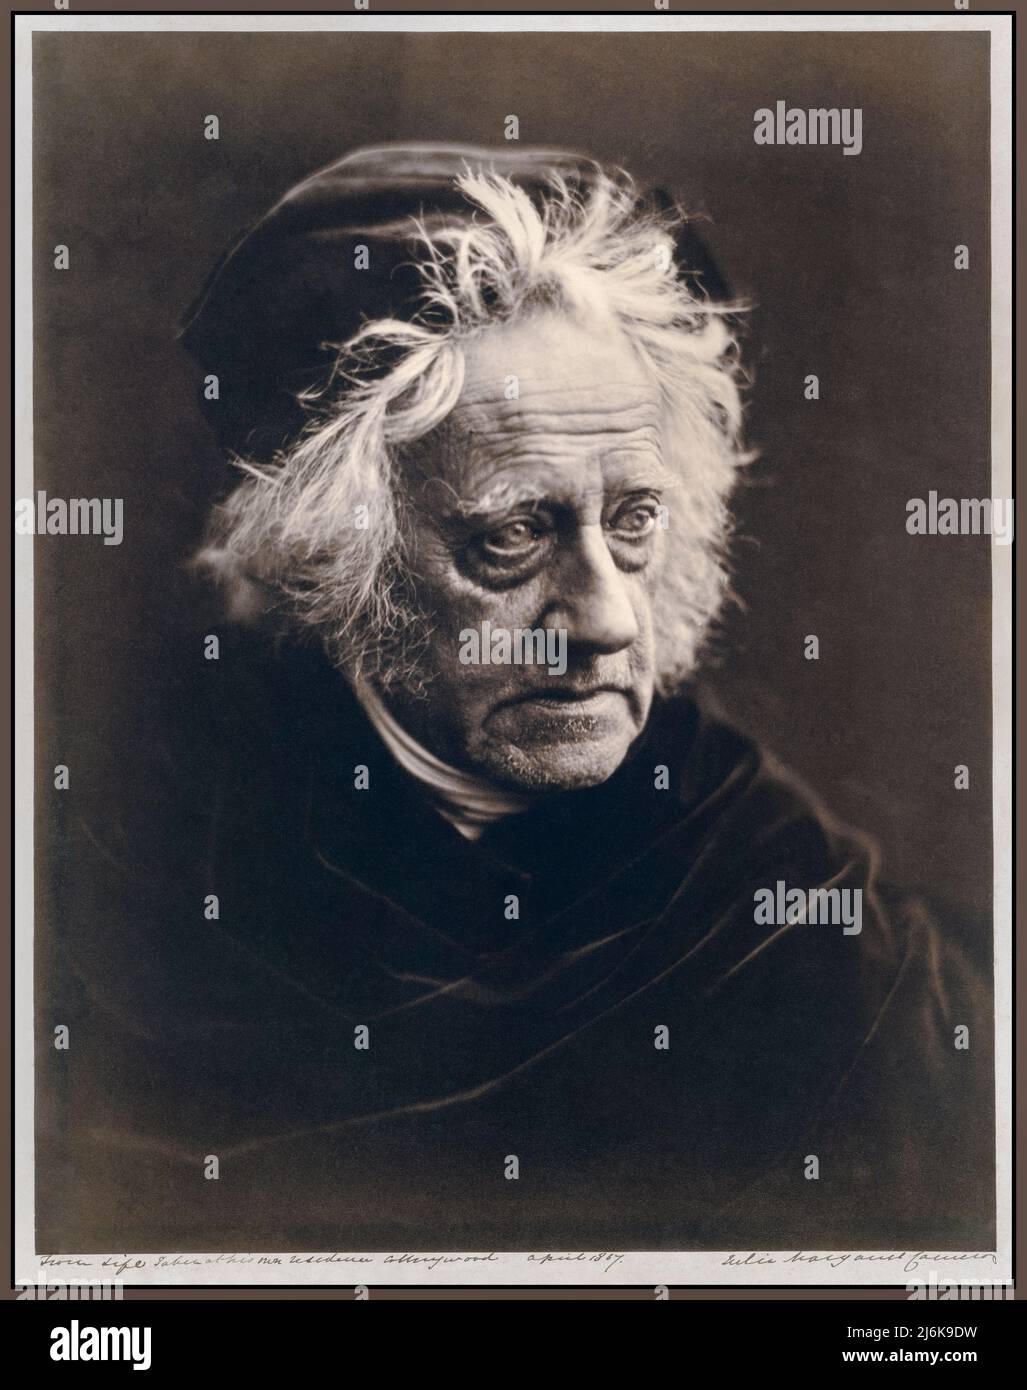 John Herschel (1815-1879), fotografato dal celebre fotografo Julia Margaret Cameron nell'aprile 1867. John Herschel era un matematico inglese, astronomo, chimico, inventore e fotografo sperimentale. Egli chiamò sette lune di Saturno e quattro lune di Urano, inventò il cianotipo e l'actinometro, e scrisse ampiamente su argomenti come la meteorologia, la geografia fisica e il telescopio. Foto Stock